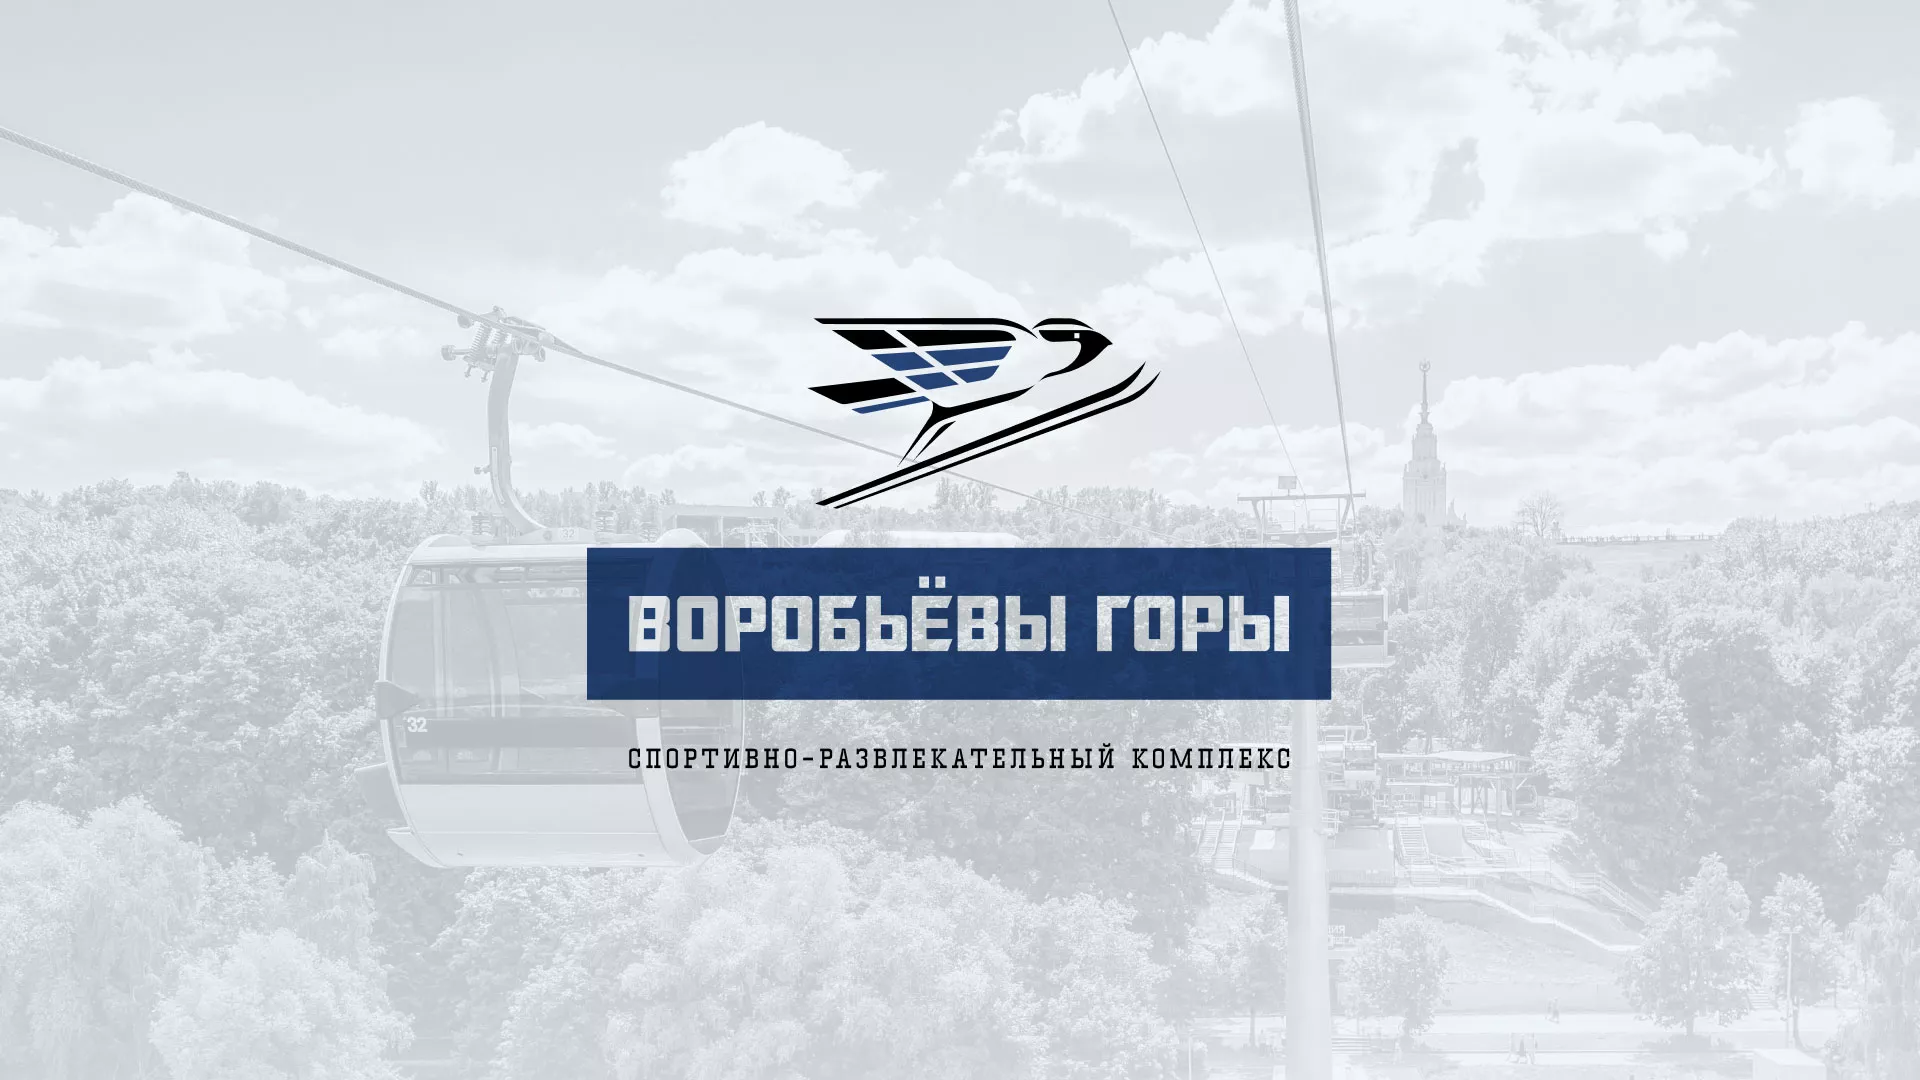 Разработка сайта в Чкаловском для спортивно-развлекательного комплекса «Воробьёвы горы»